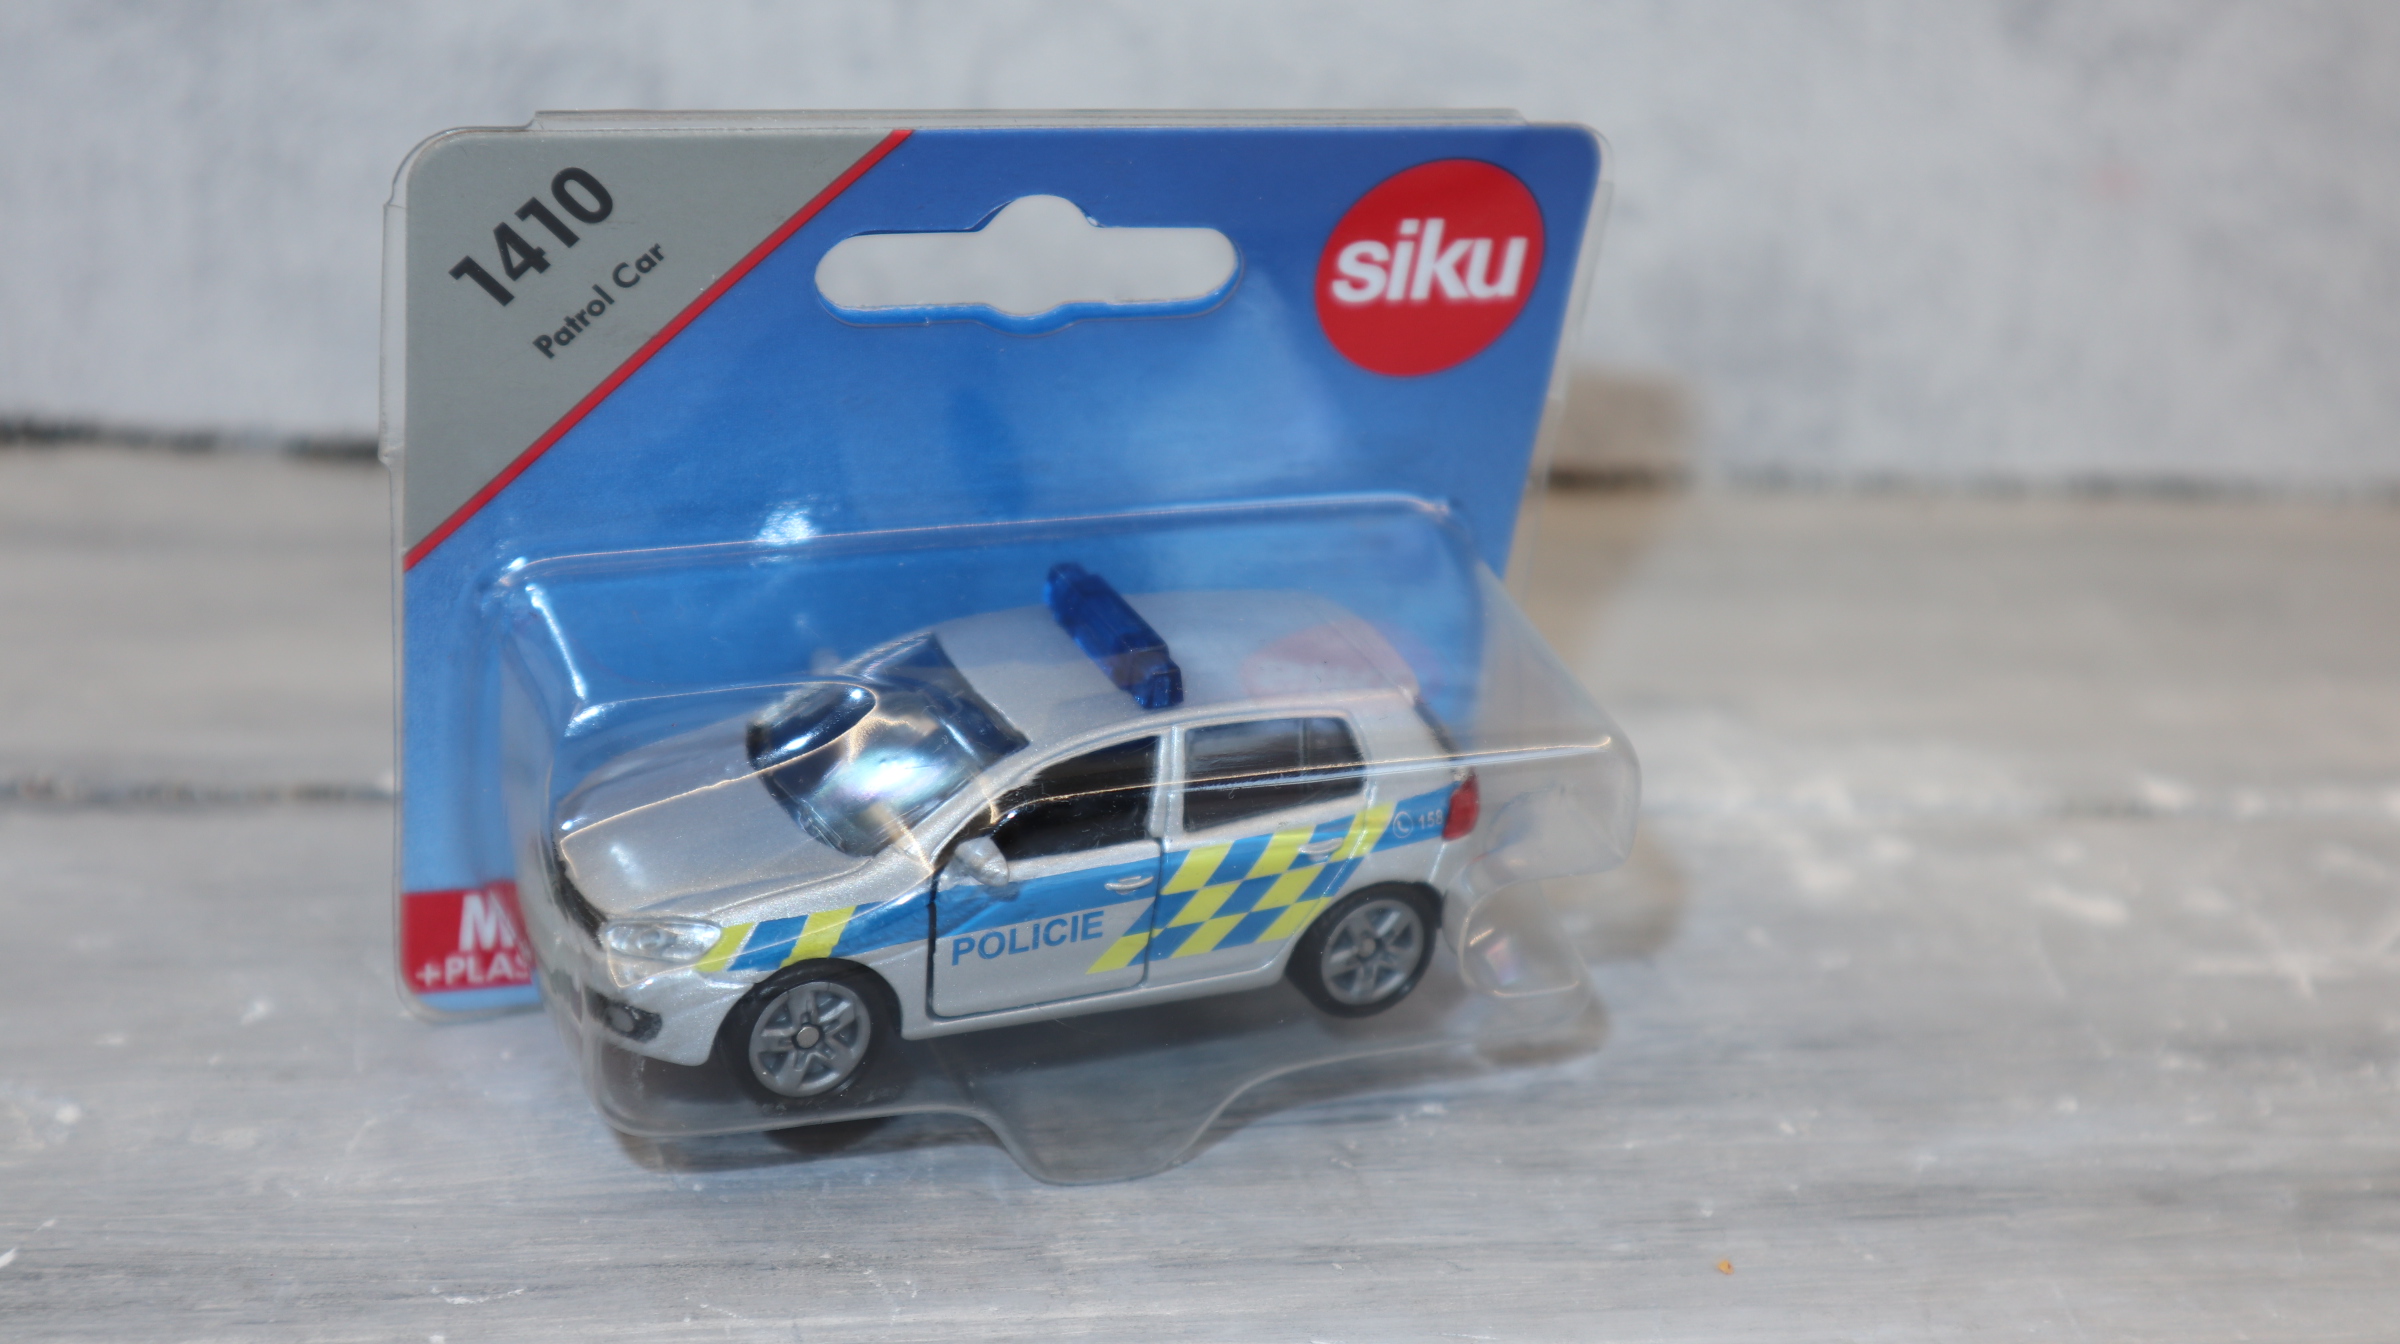 Siku 1410 in 1:55,  VW Golf VI Polizei Tschechnien Sondermodell, NEU in OVP